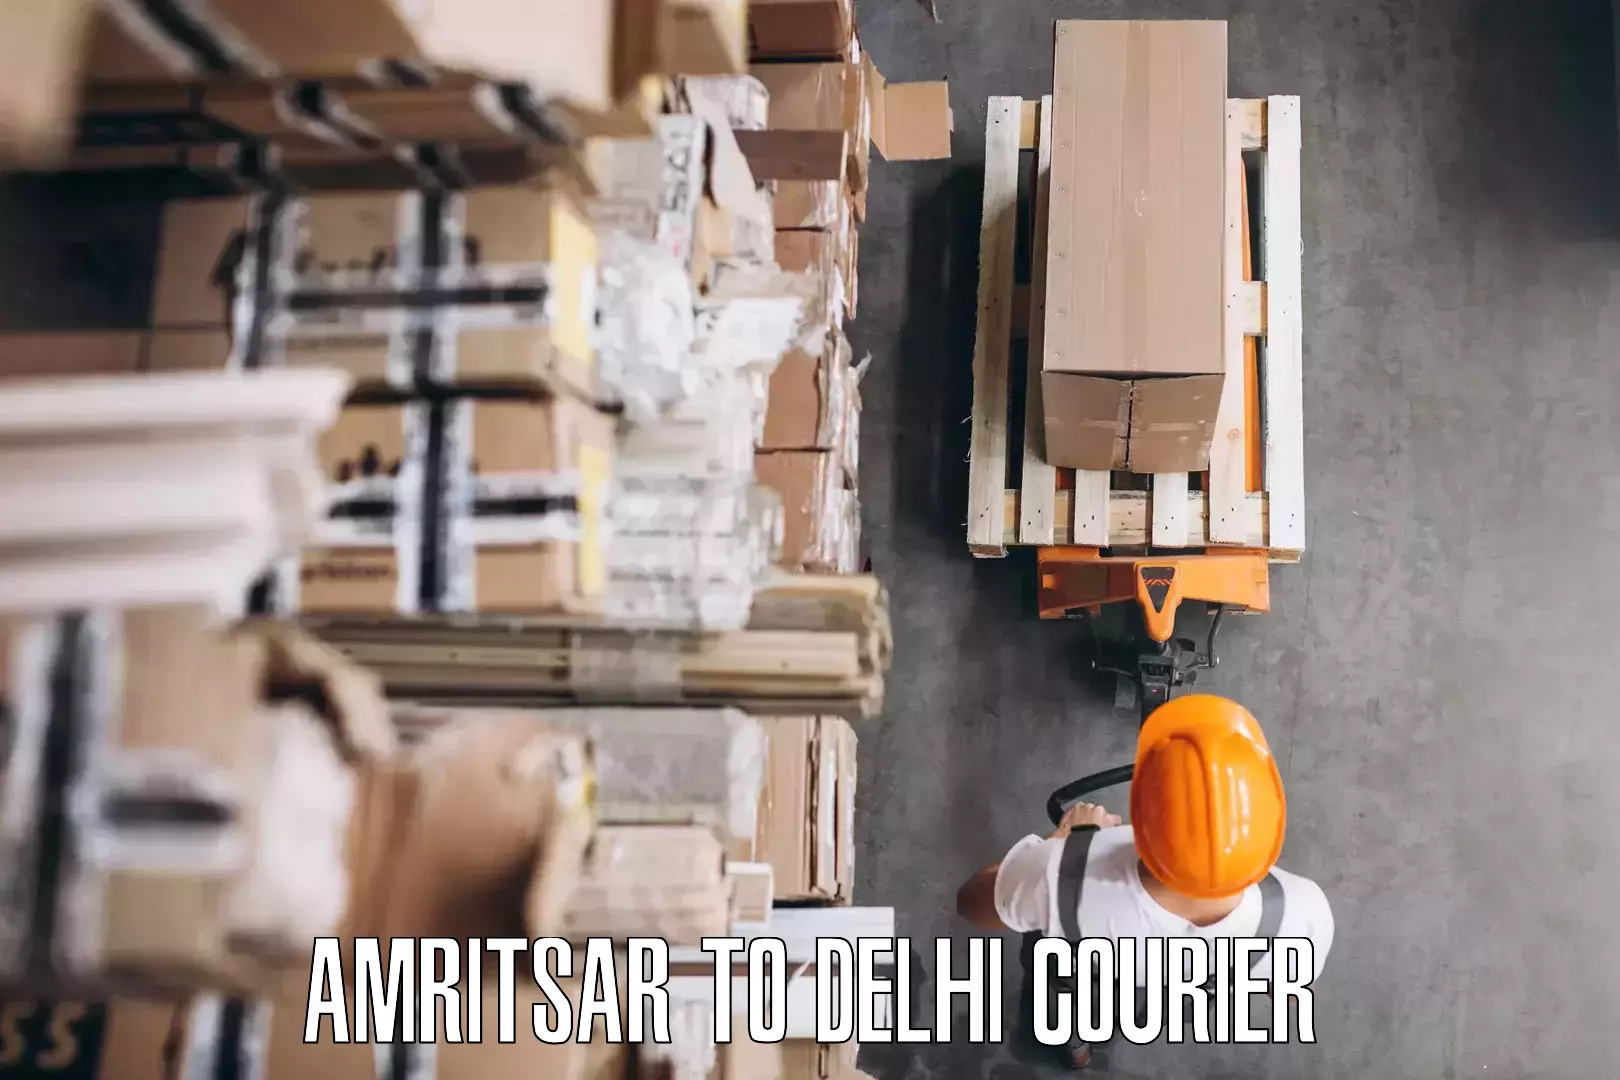 Household goods transporters Amritsar to Delhi